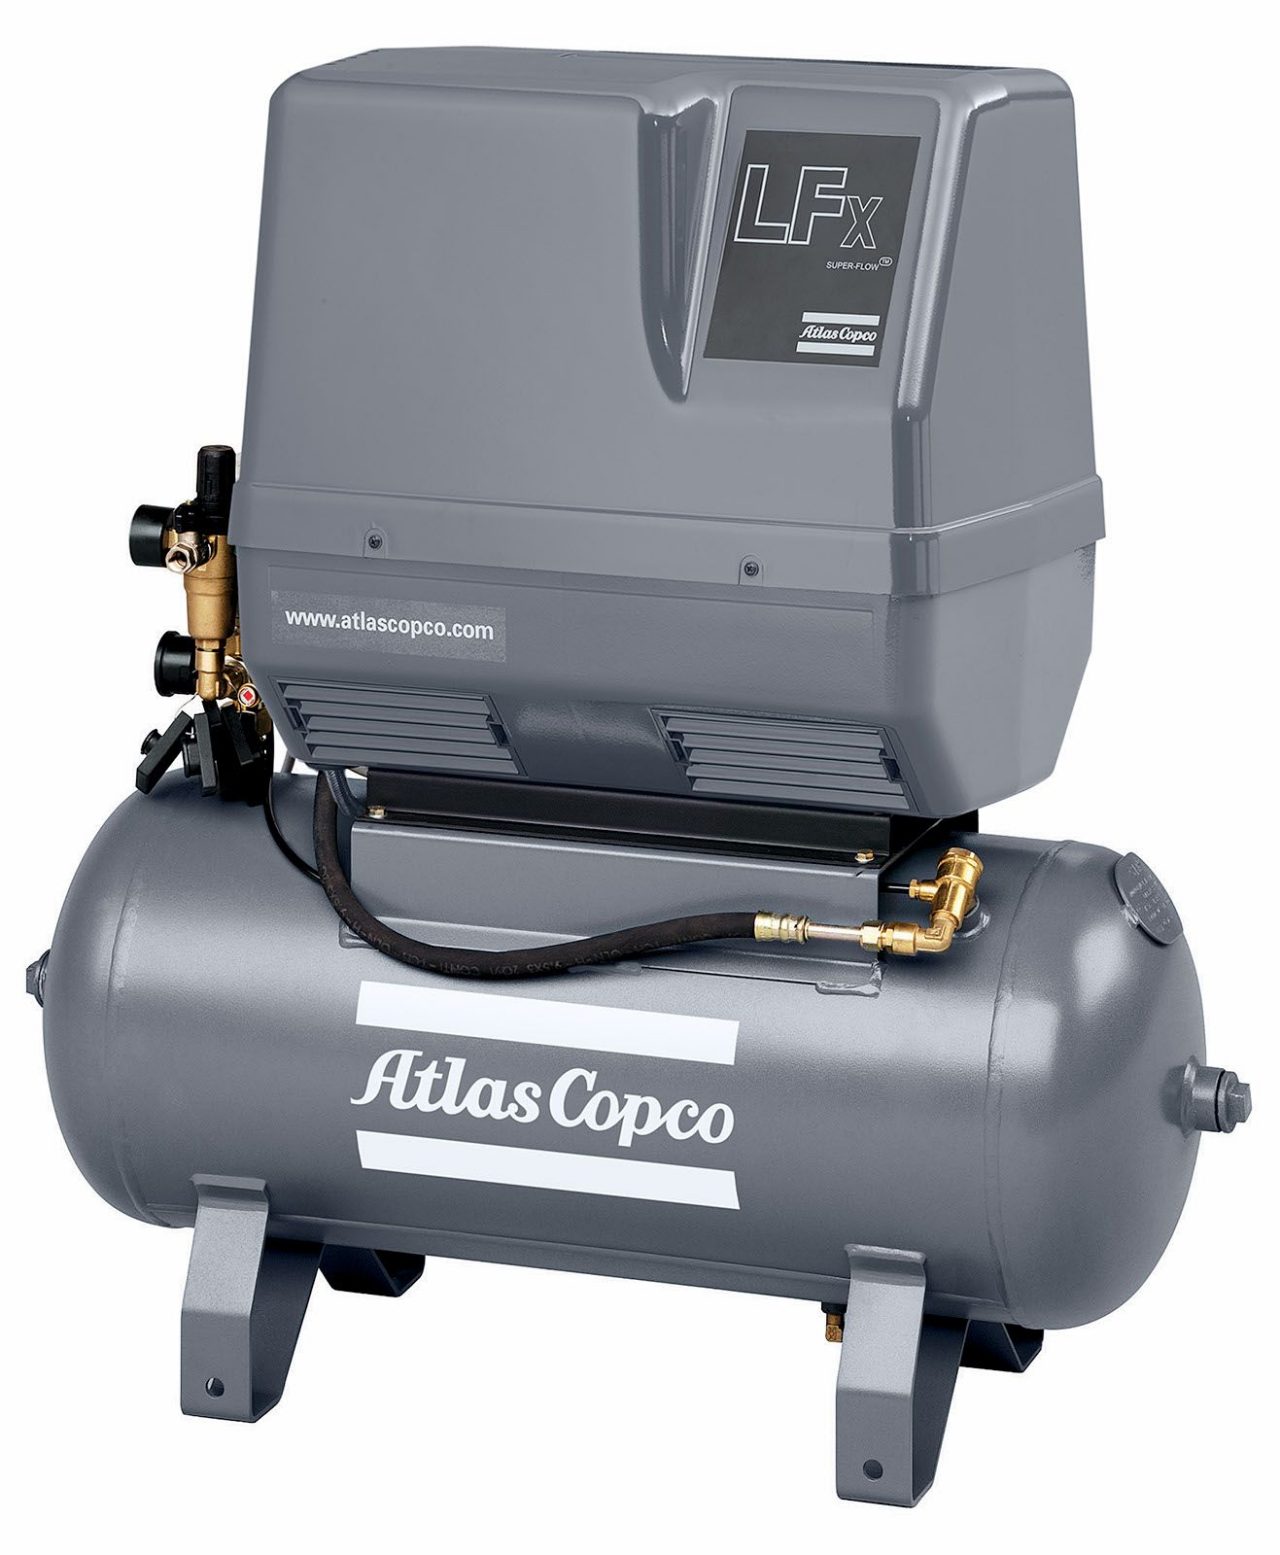 Oil-free piston air compressor: LFx